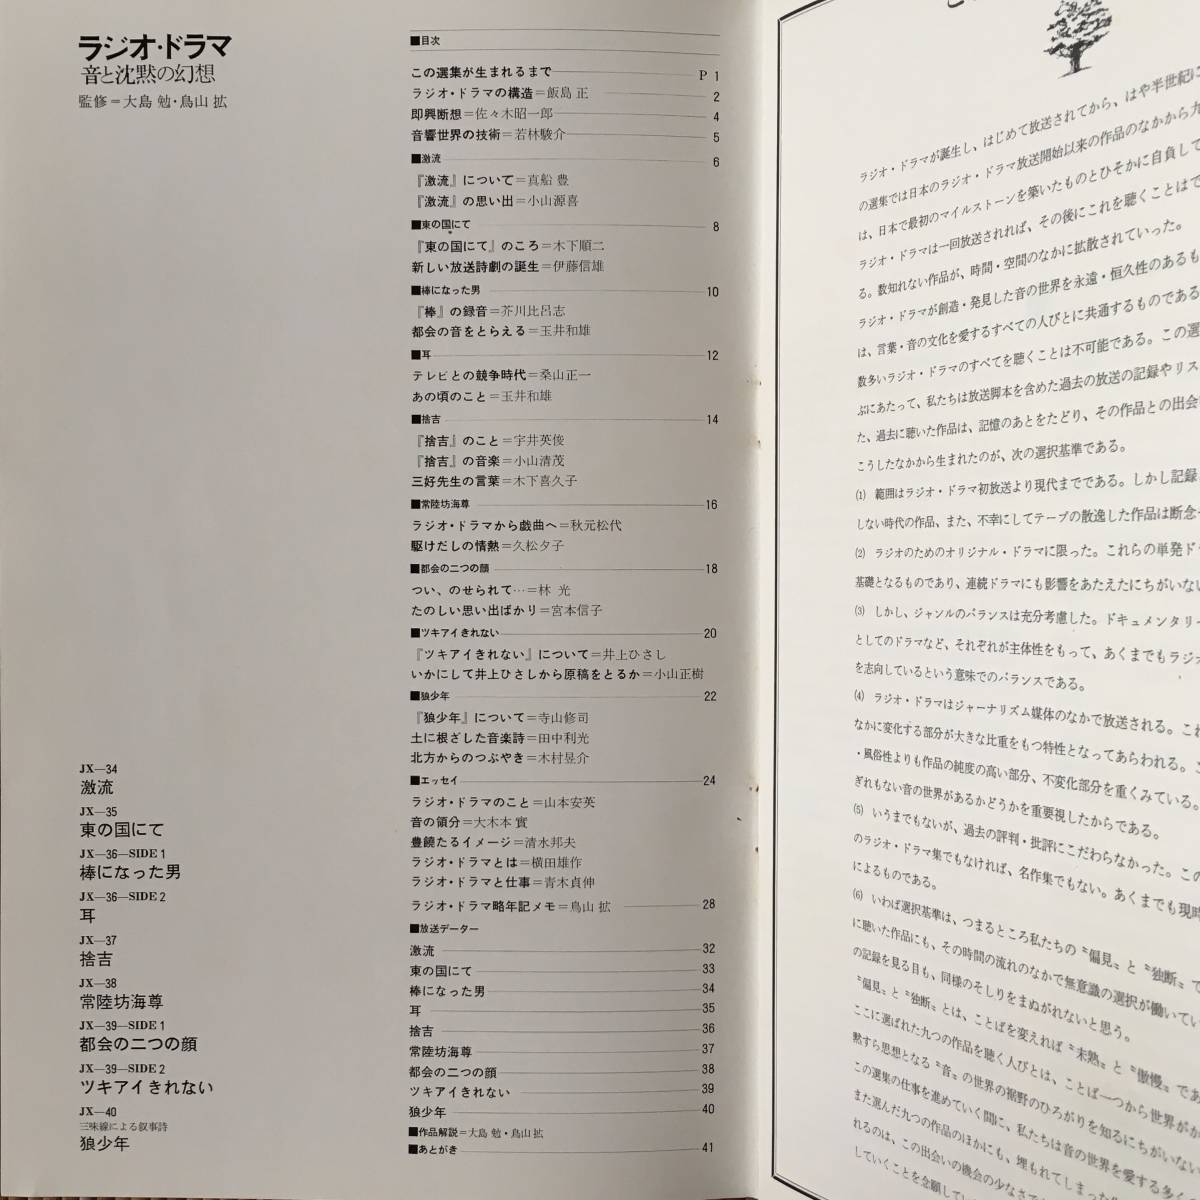 7LP-BOX ラジオ ドラマ 音と沈黙の幻想 寺山修司 安部公房 井上ひさし 